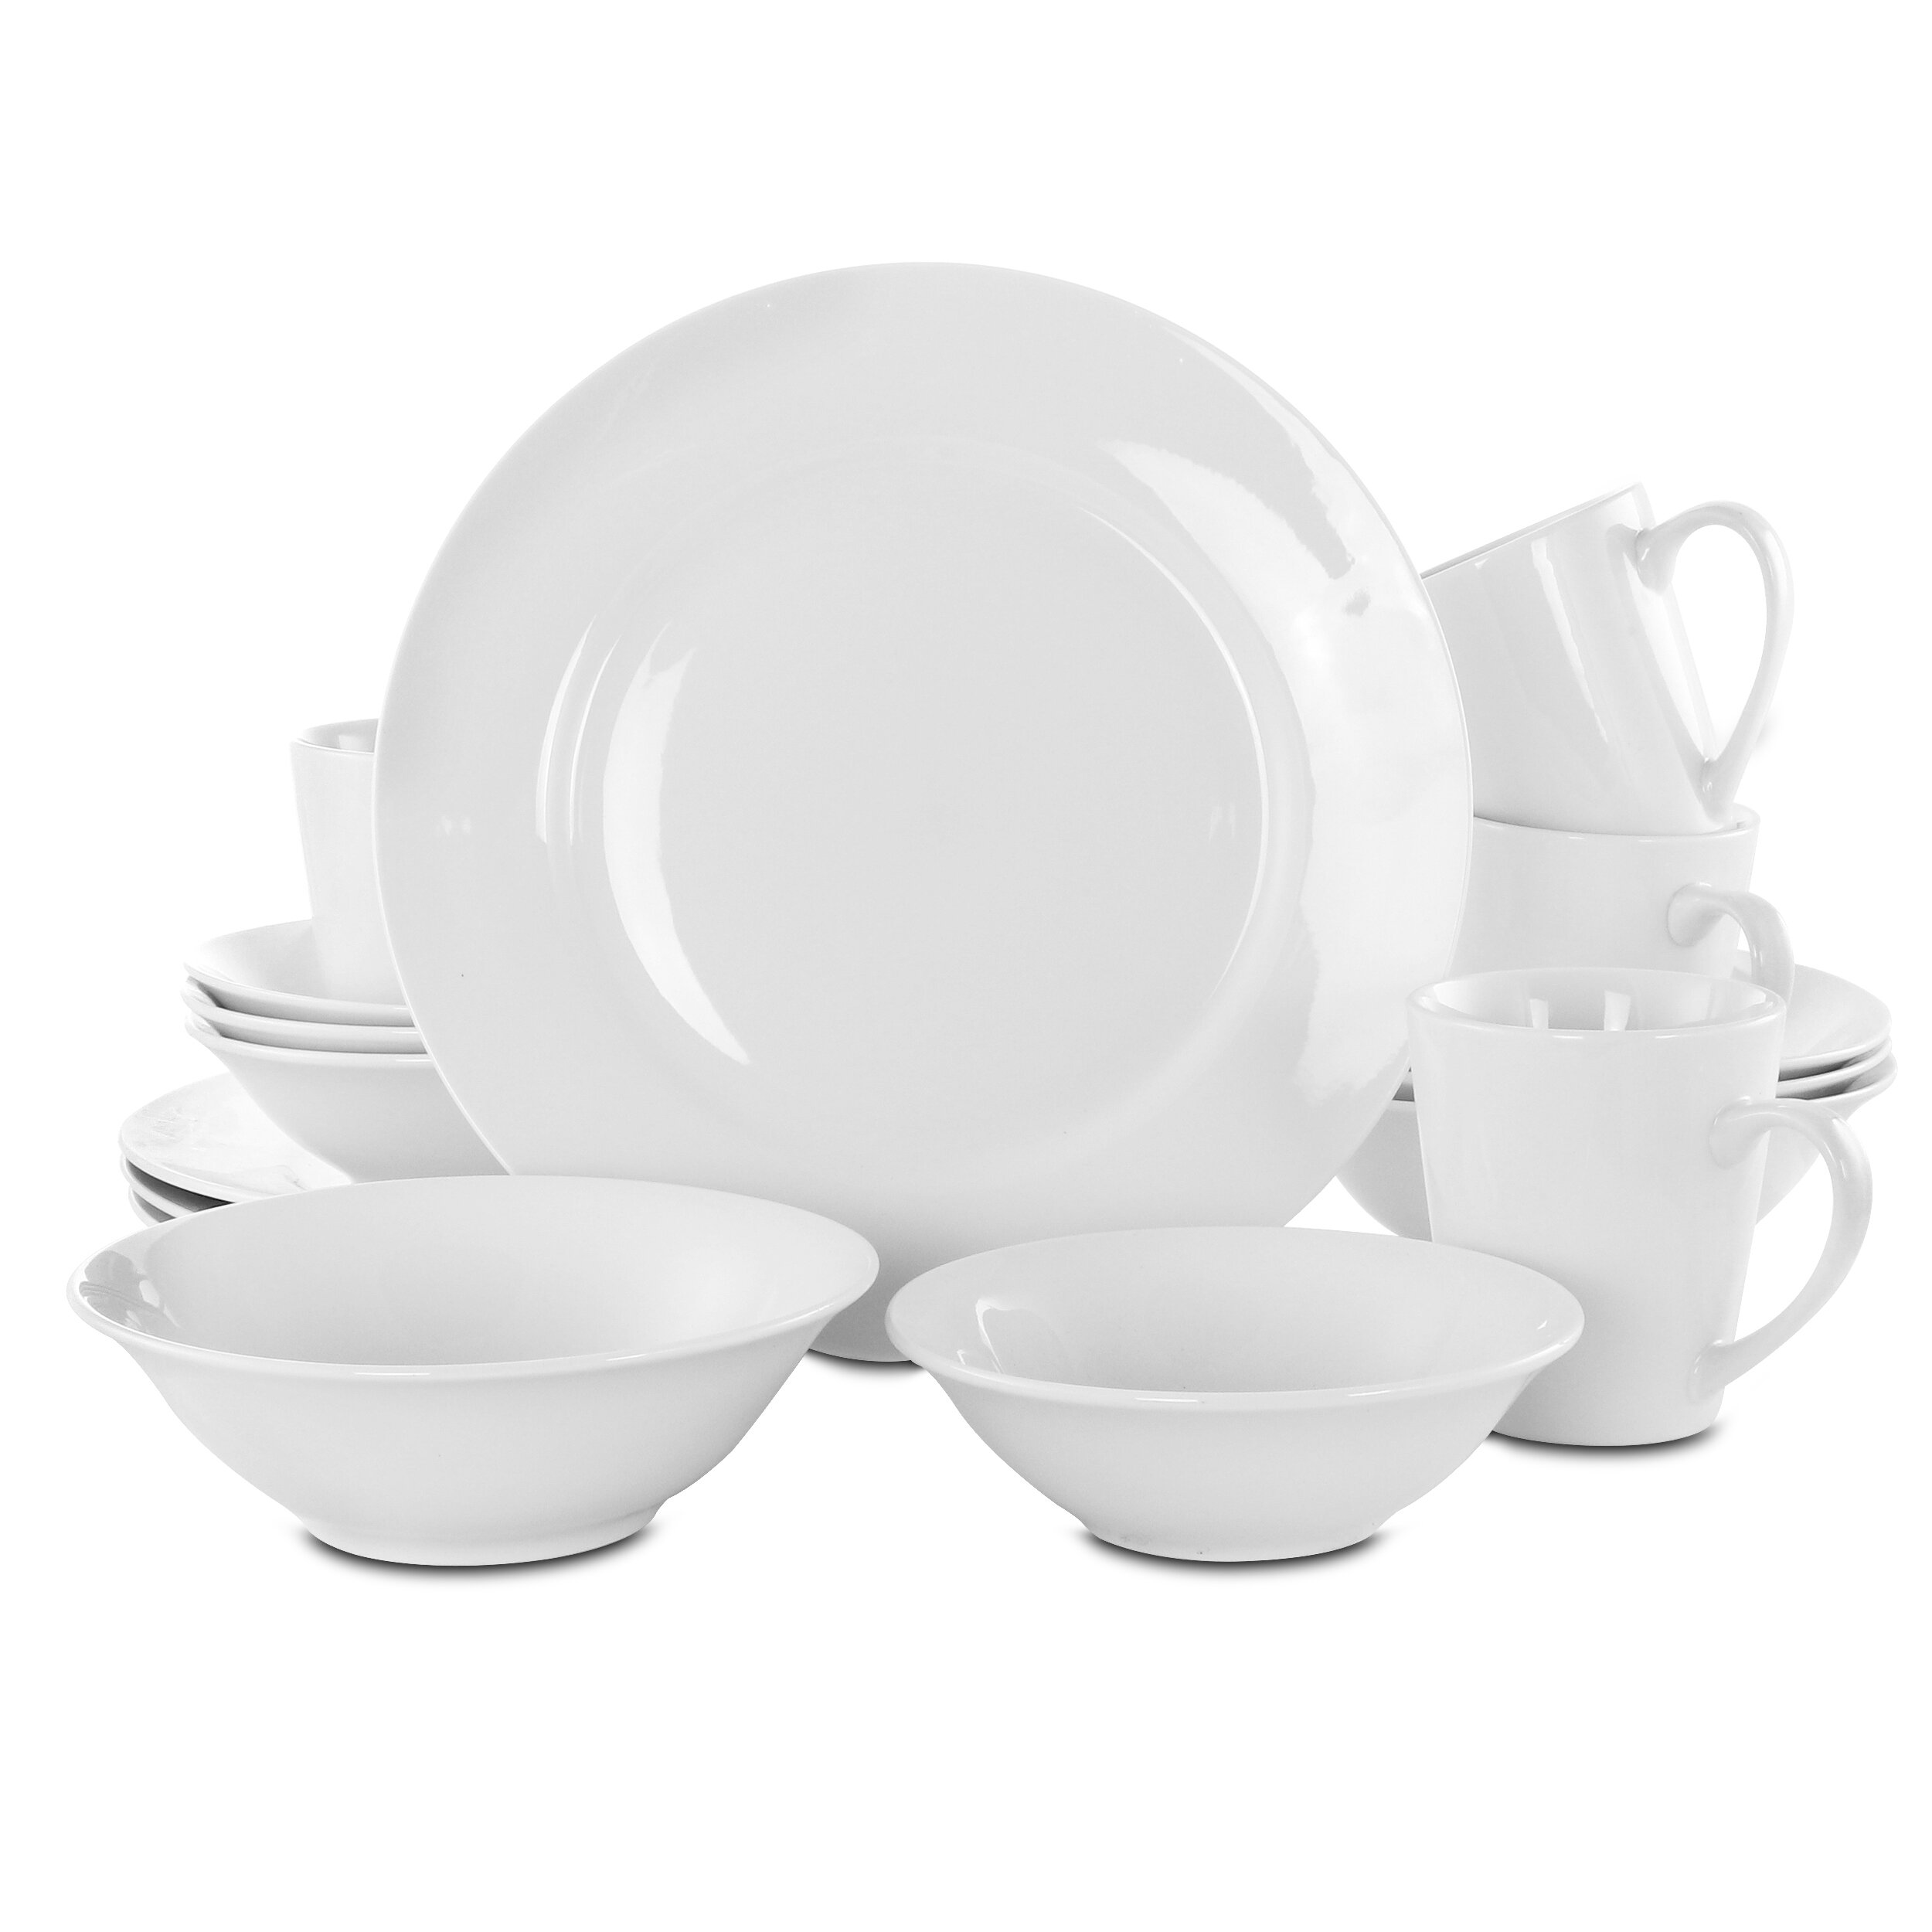 earthenware dinnerware